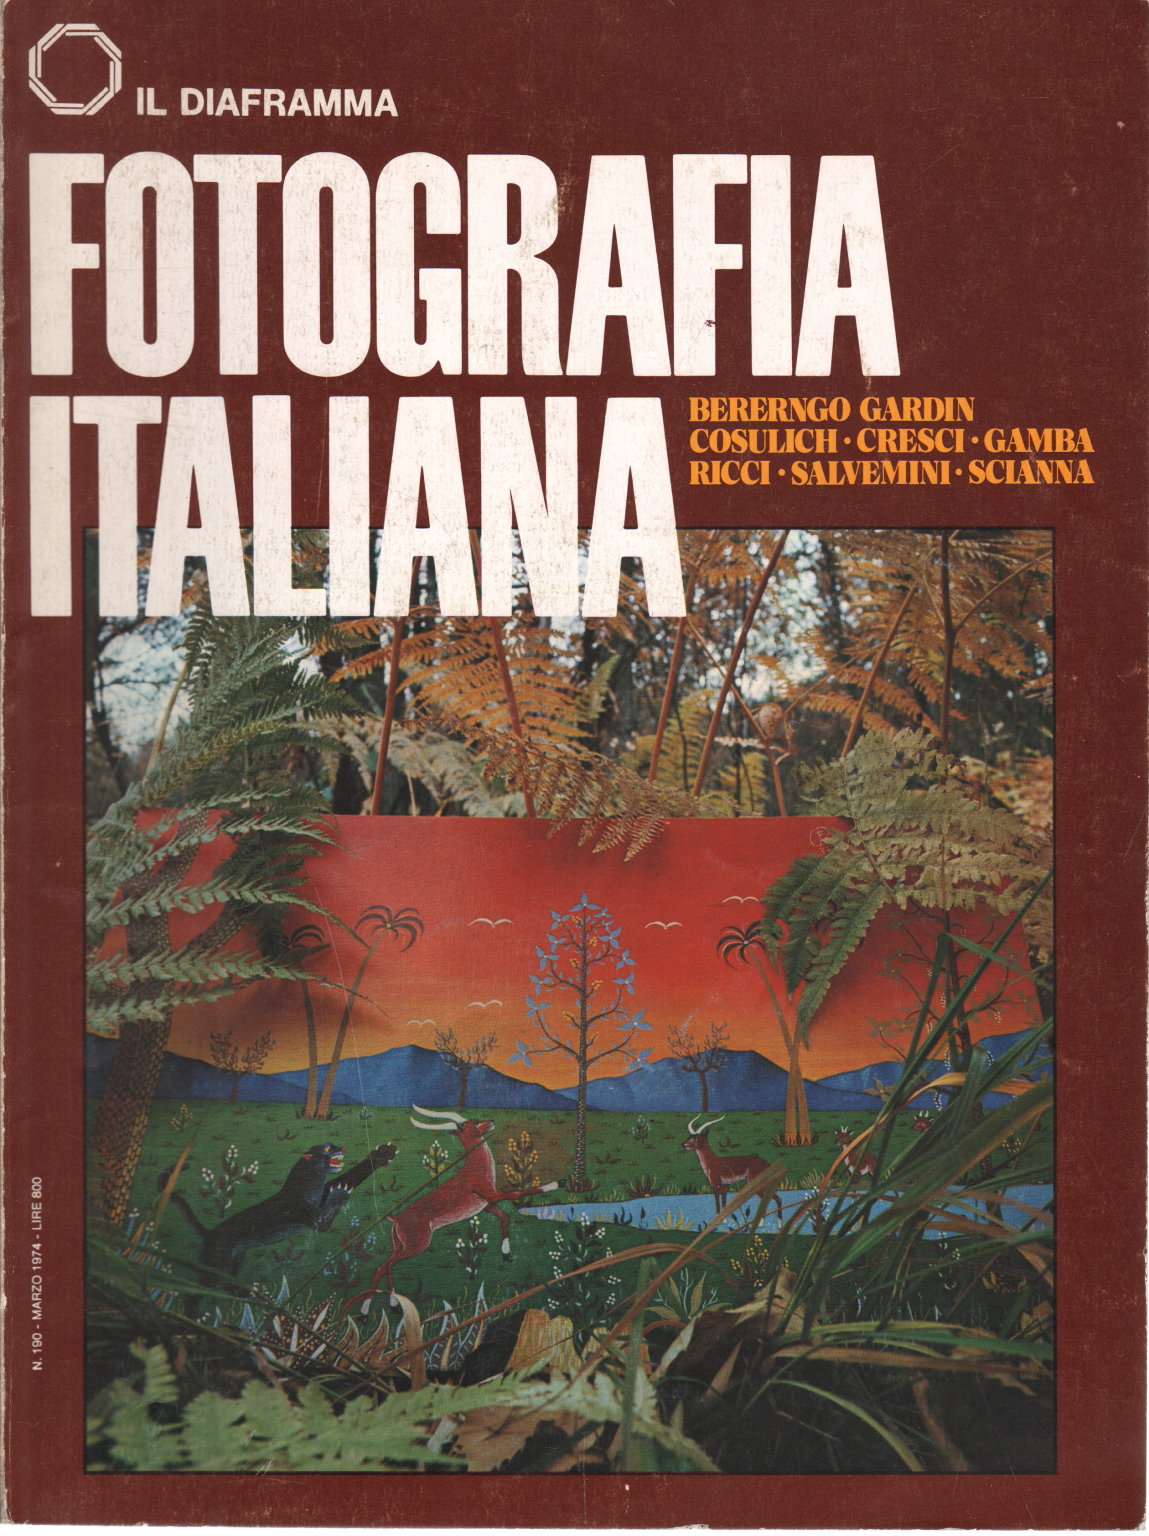 Il diaframma: Fotografia italiana (n. 190 marzo 1, AA.VV.